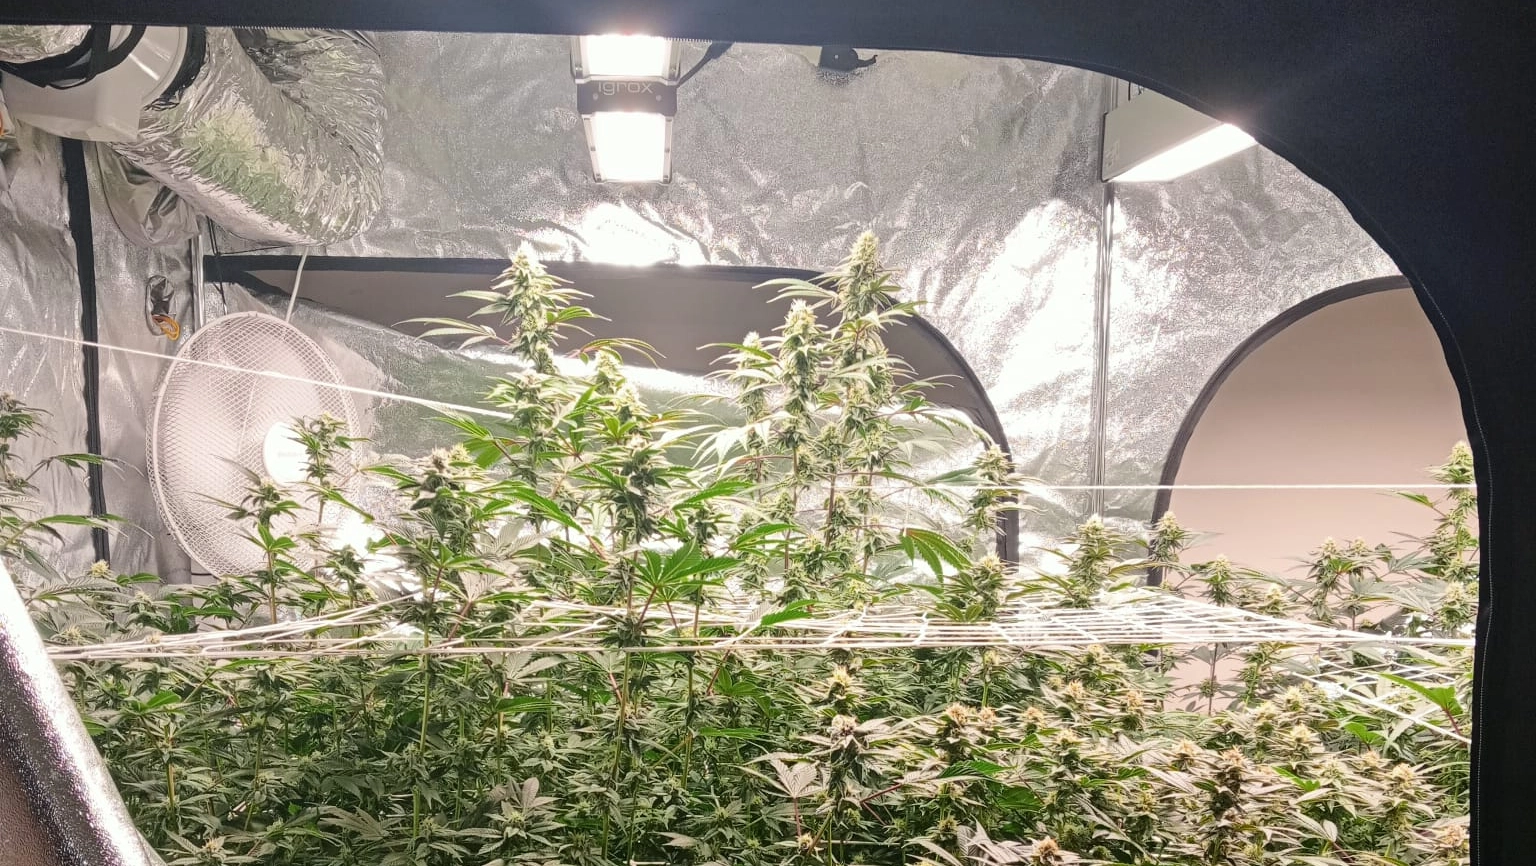 La piantagione di marijuana rinvenuta nell'abitazione del 36enne